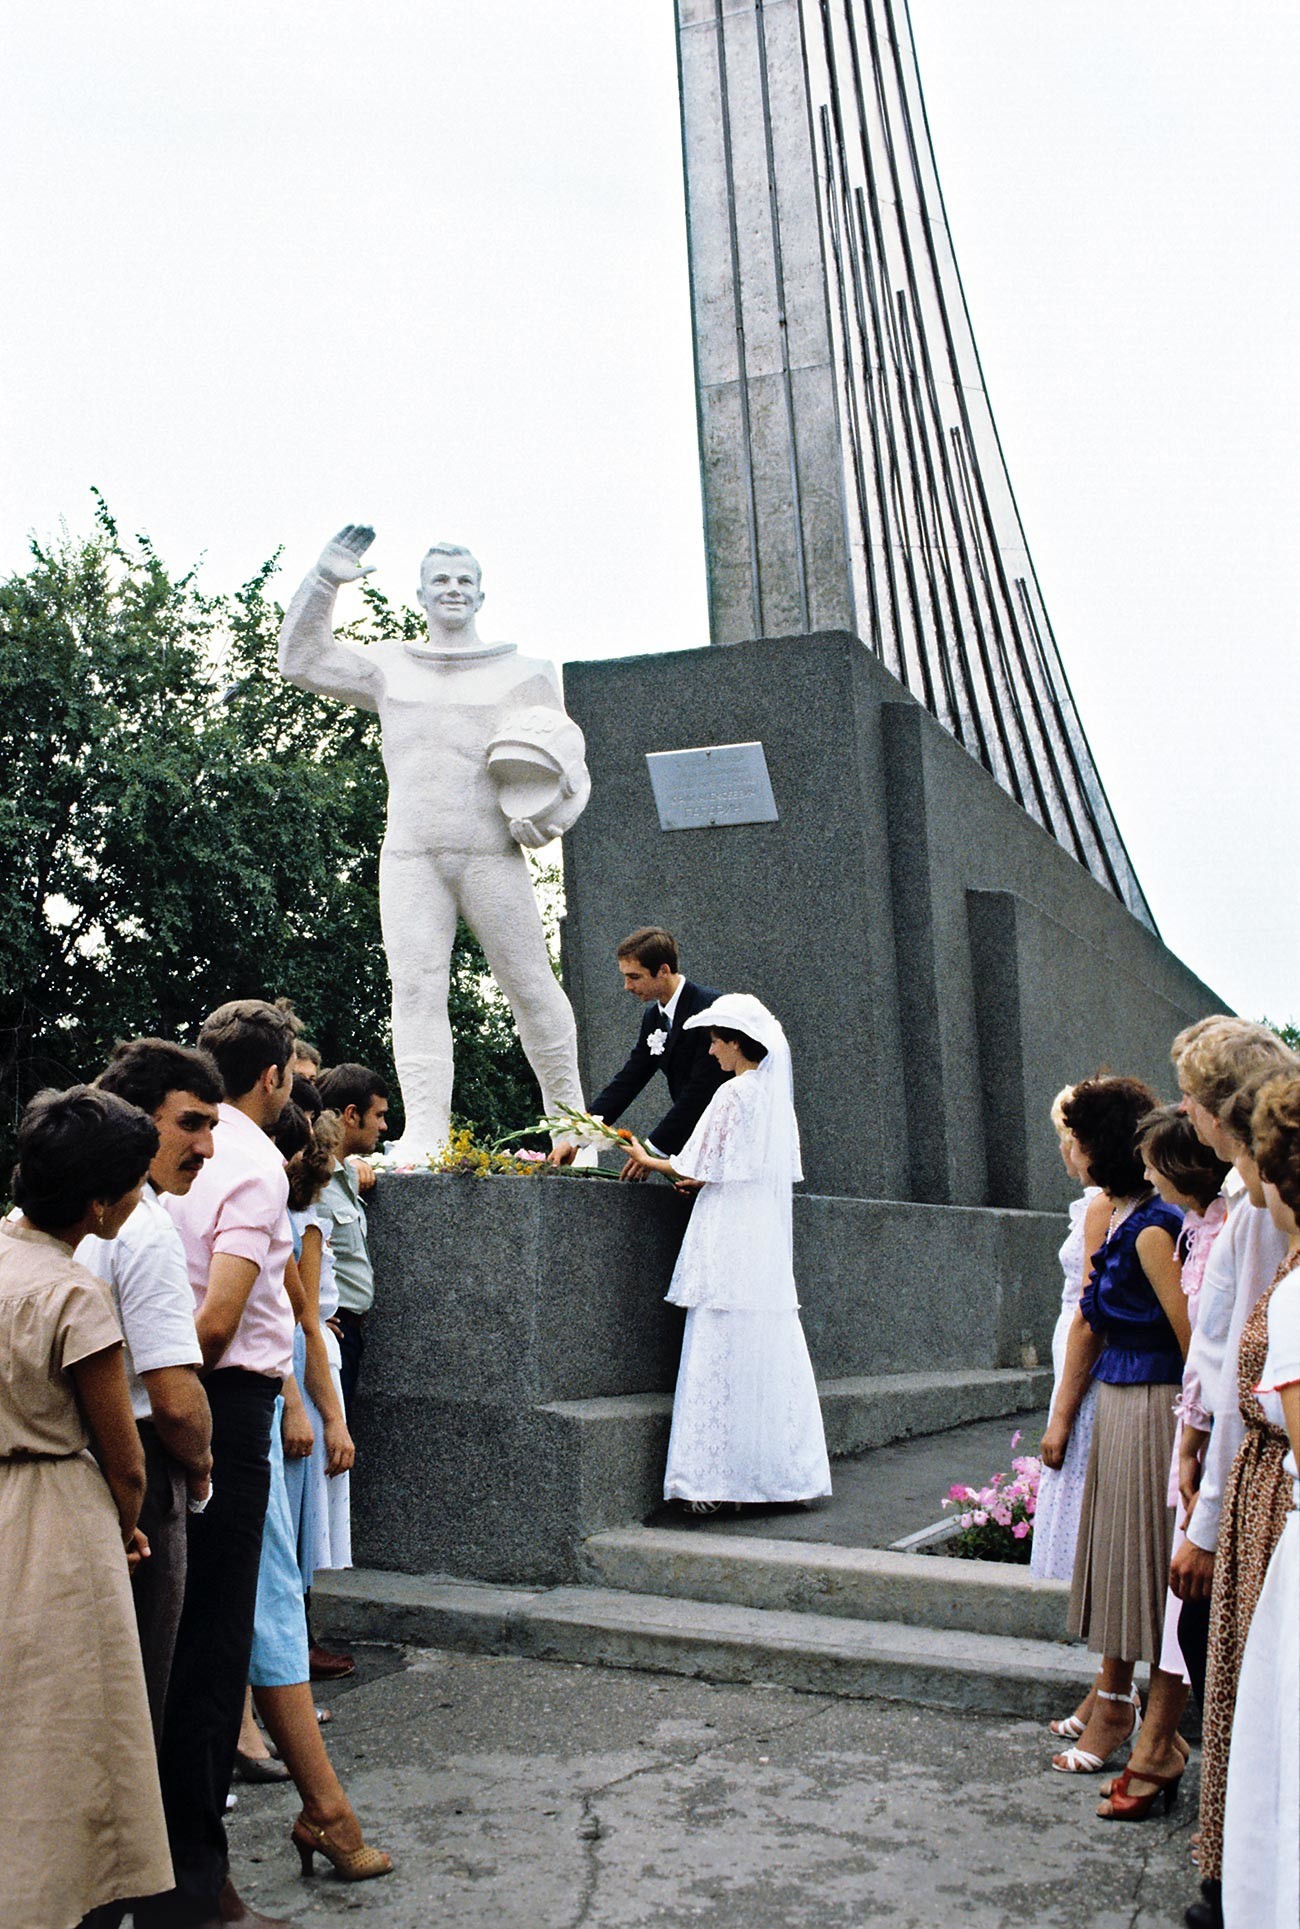 Pri spomeniku Gagarina, ki je tudi hkrati kraj njegovega pristanka, iz časa Sovjetske zveze.
